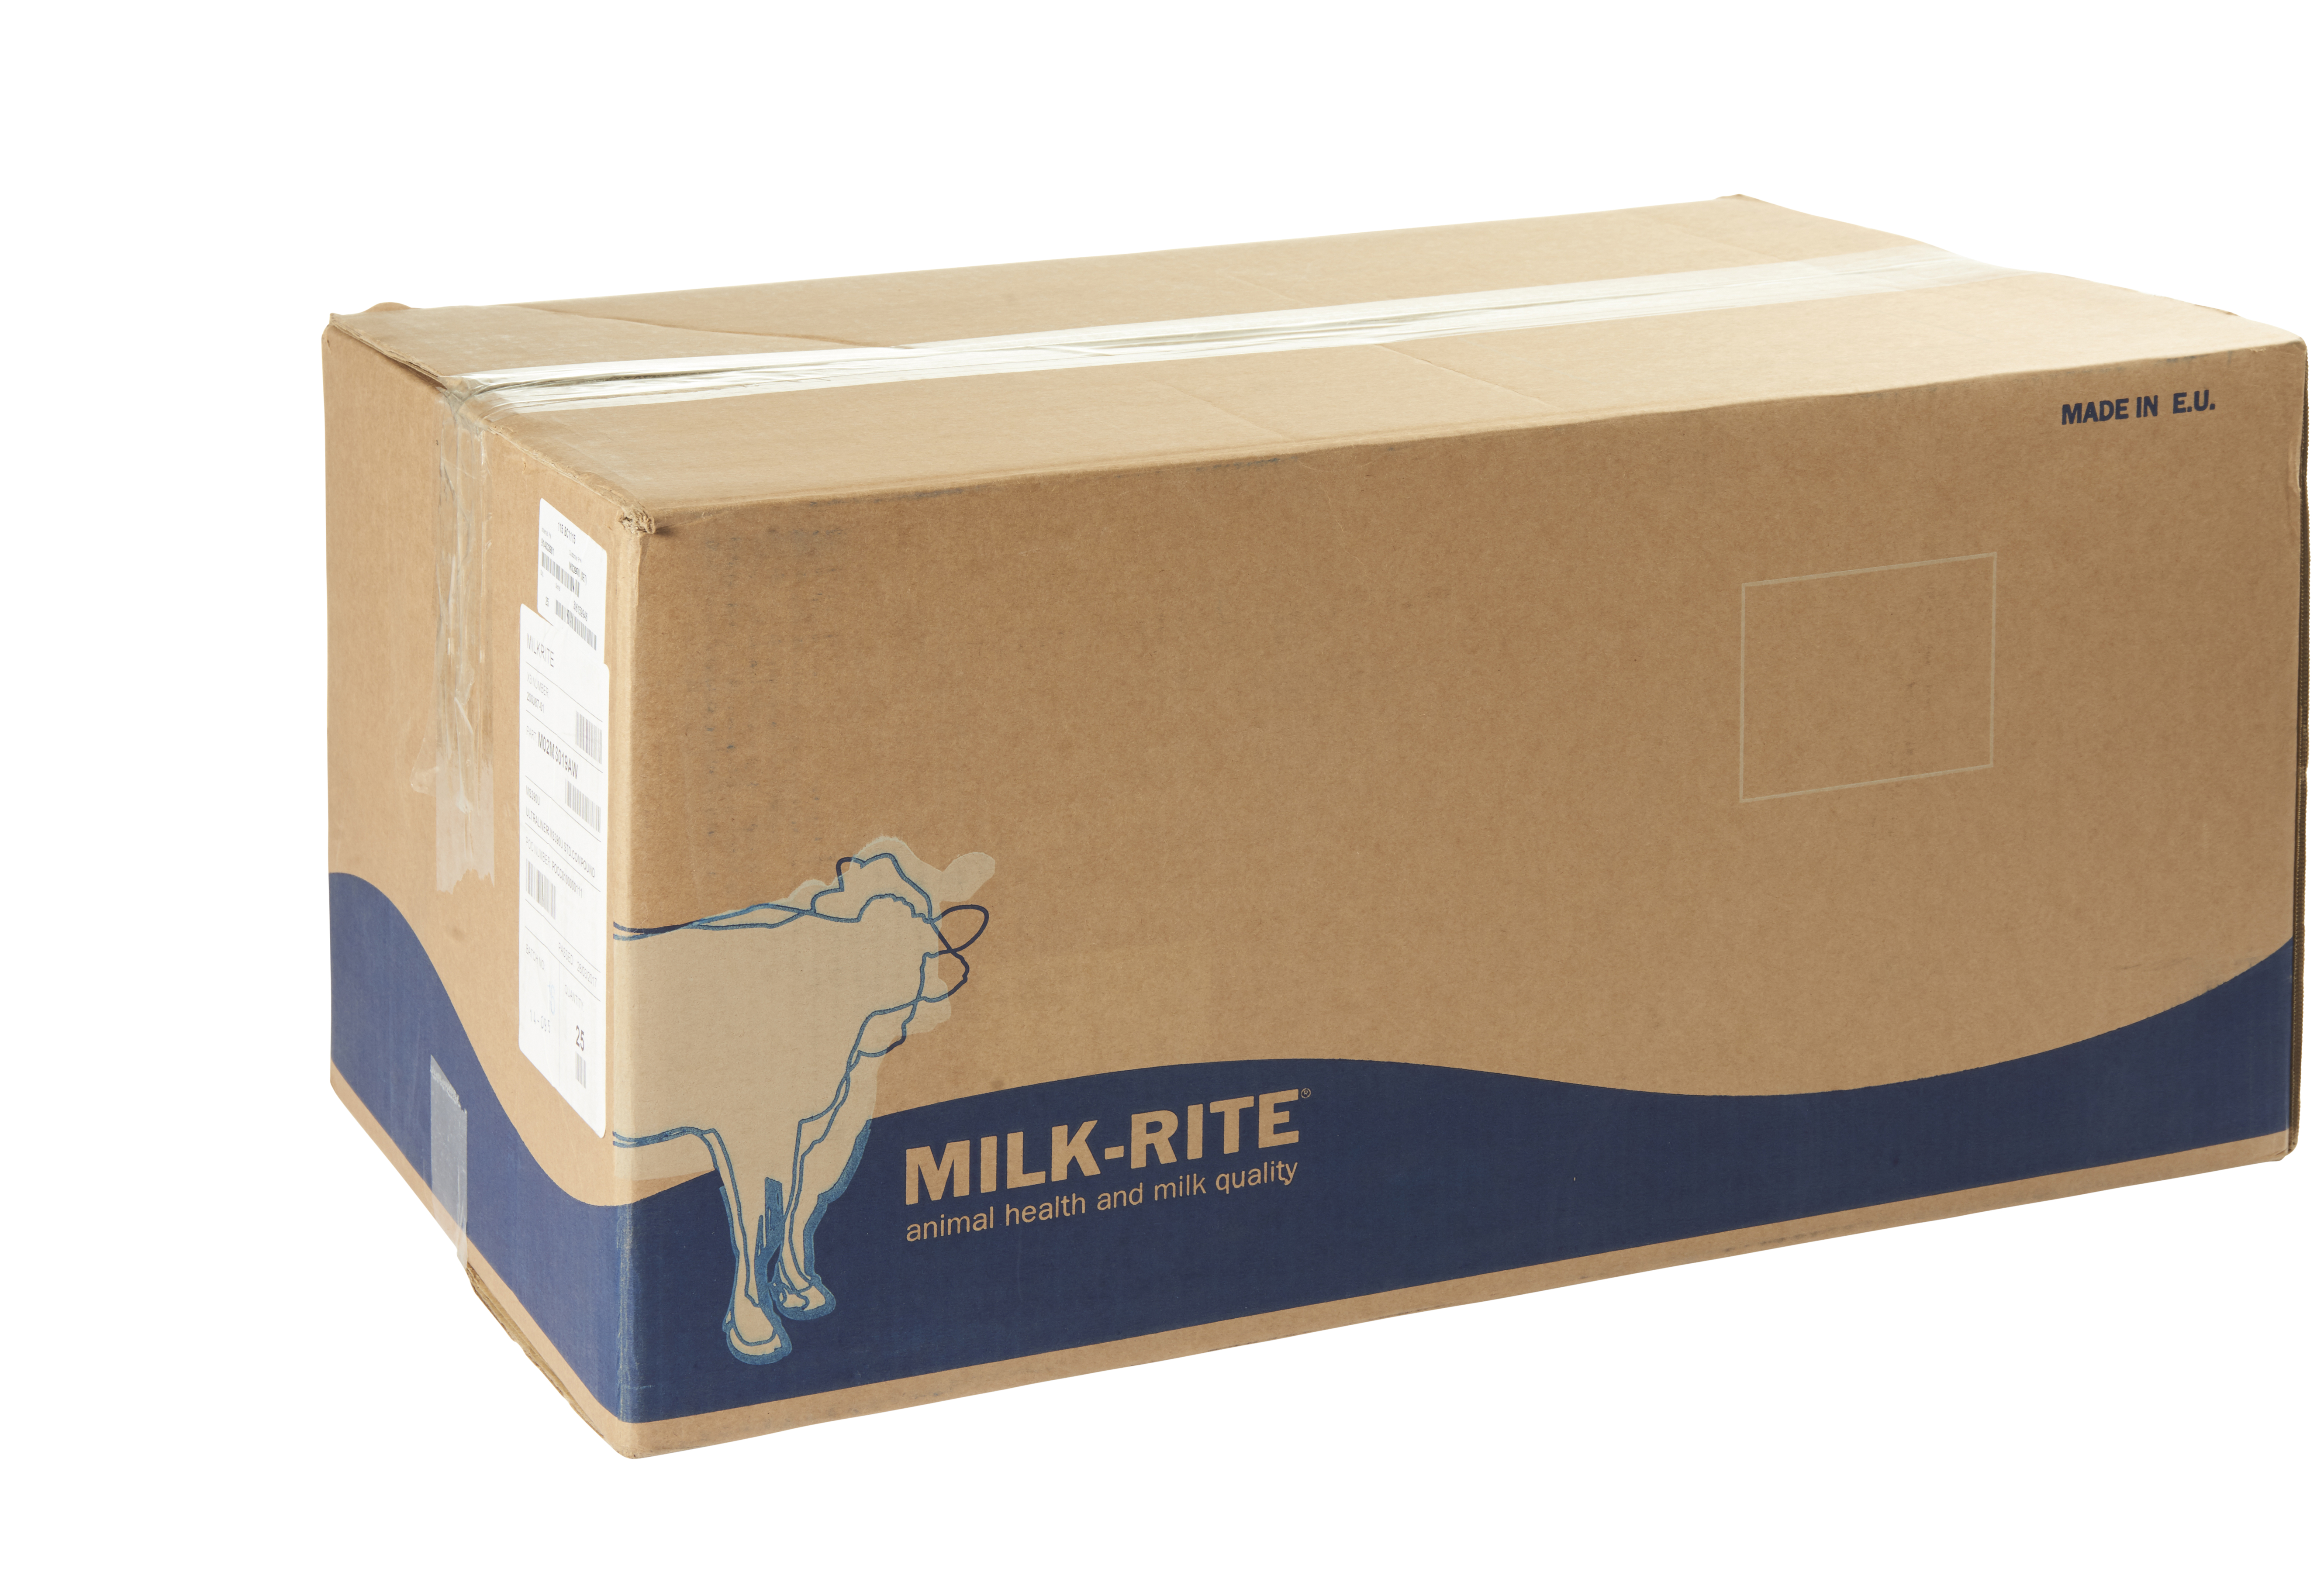 Zitzengummi Milk-Rite SAC010U für 25215010 à 4 Stück